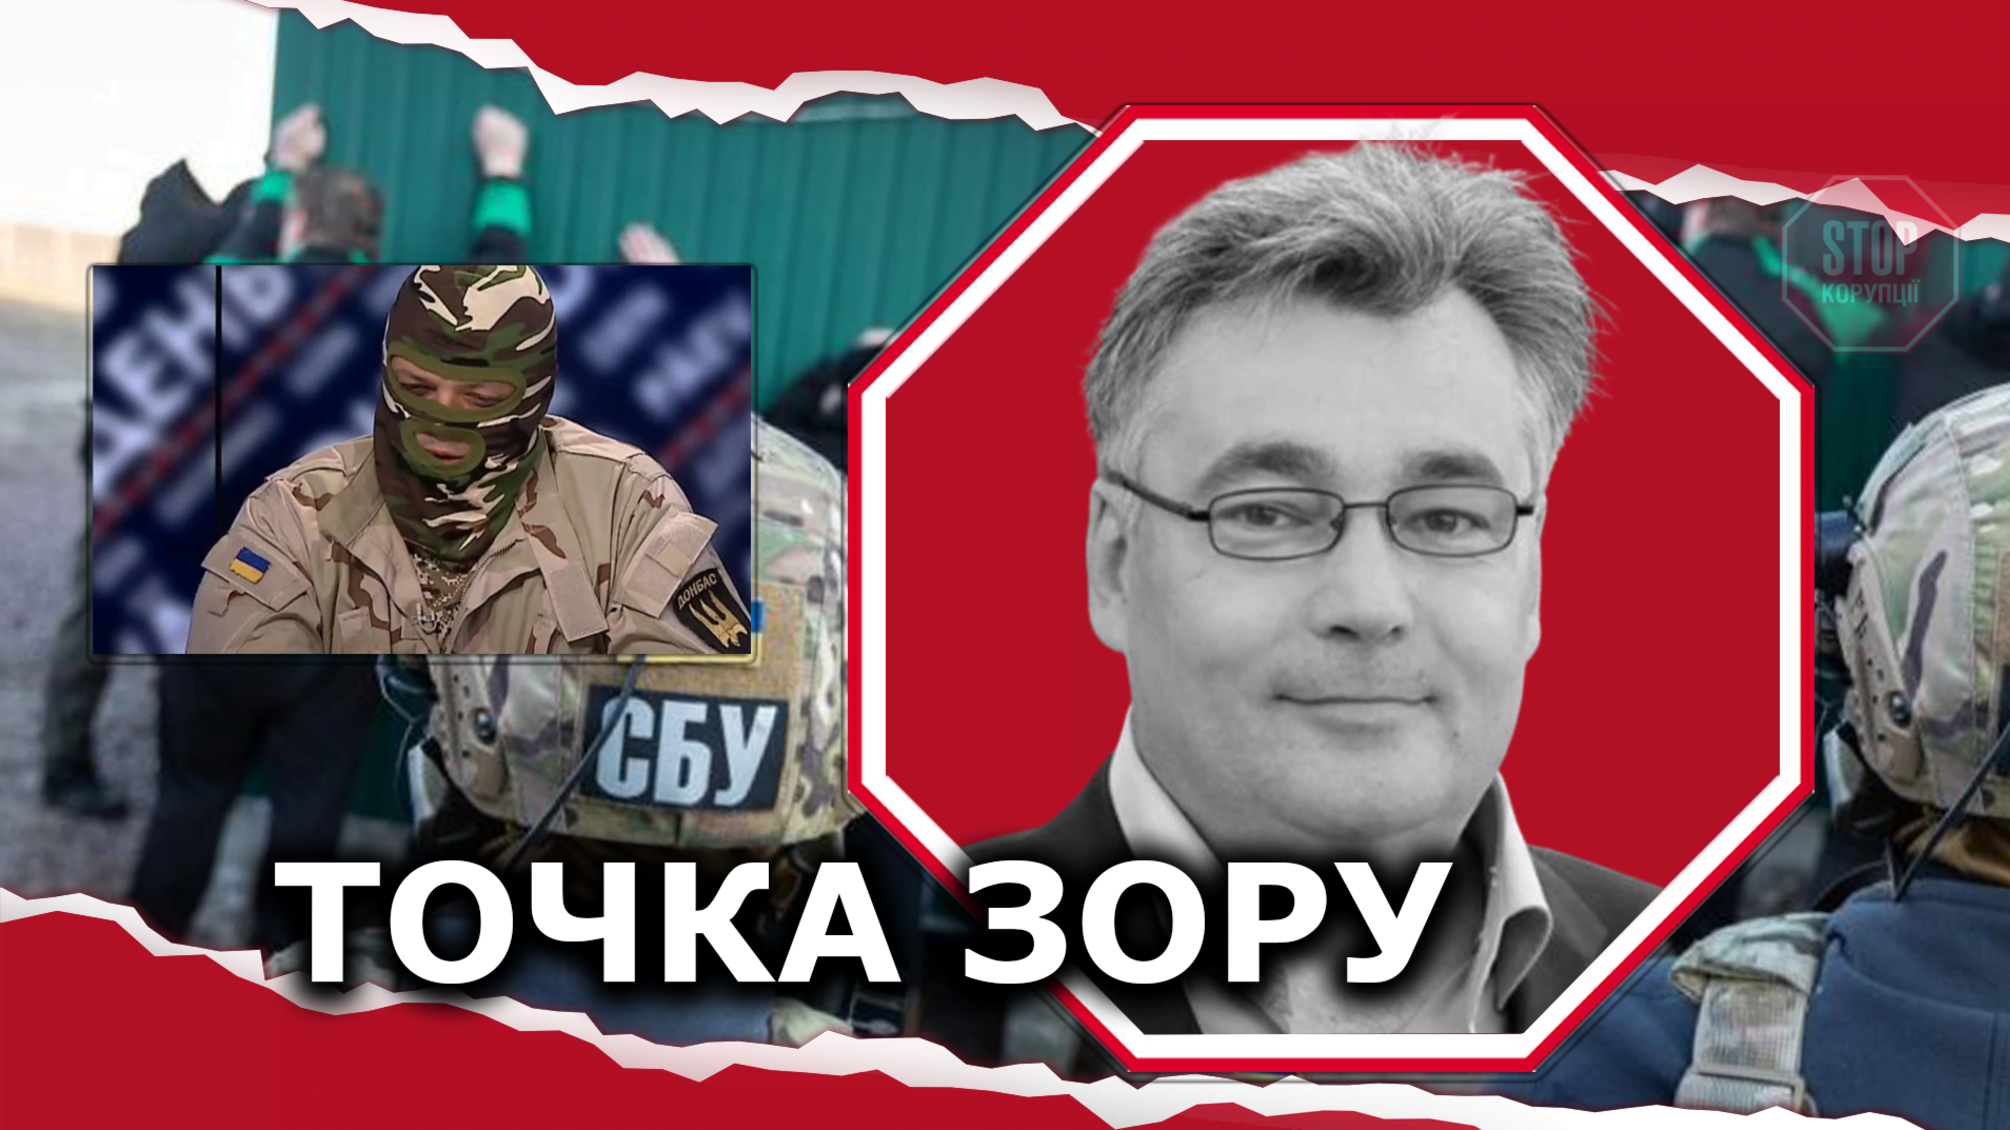 Затримання членів «ПВК Семенченка»: політична спецоперація чи кримінальні розбірки?